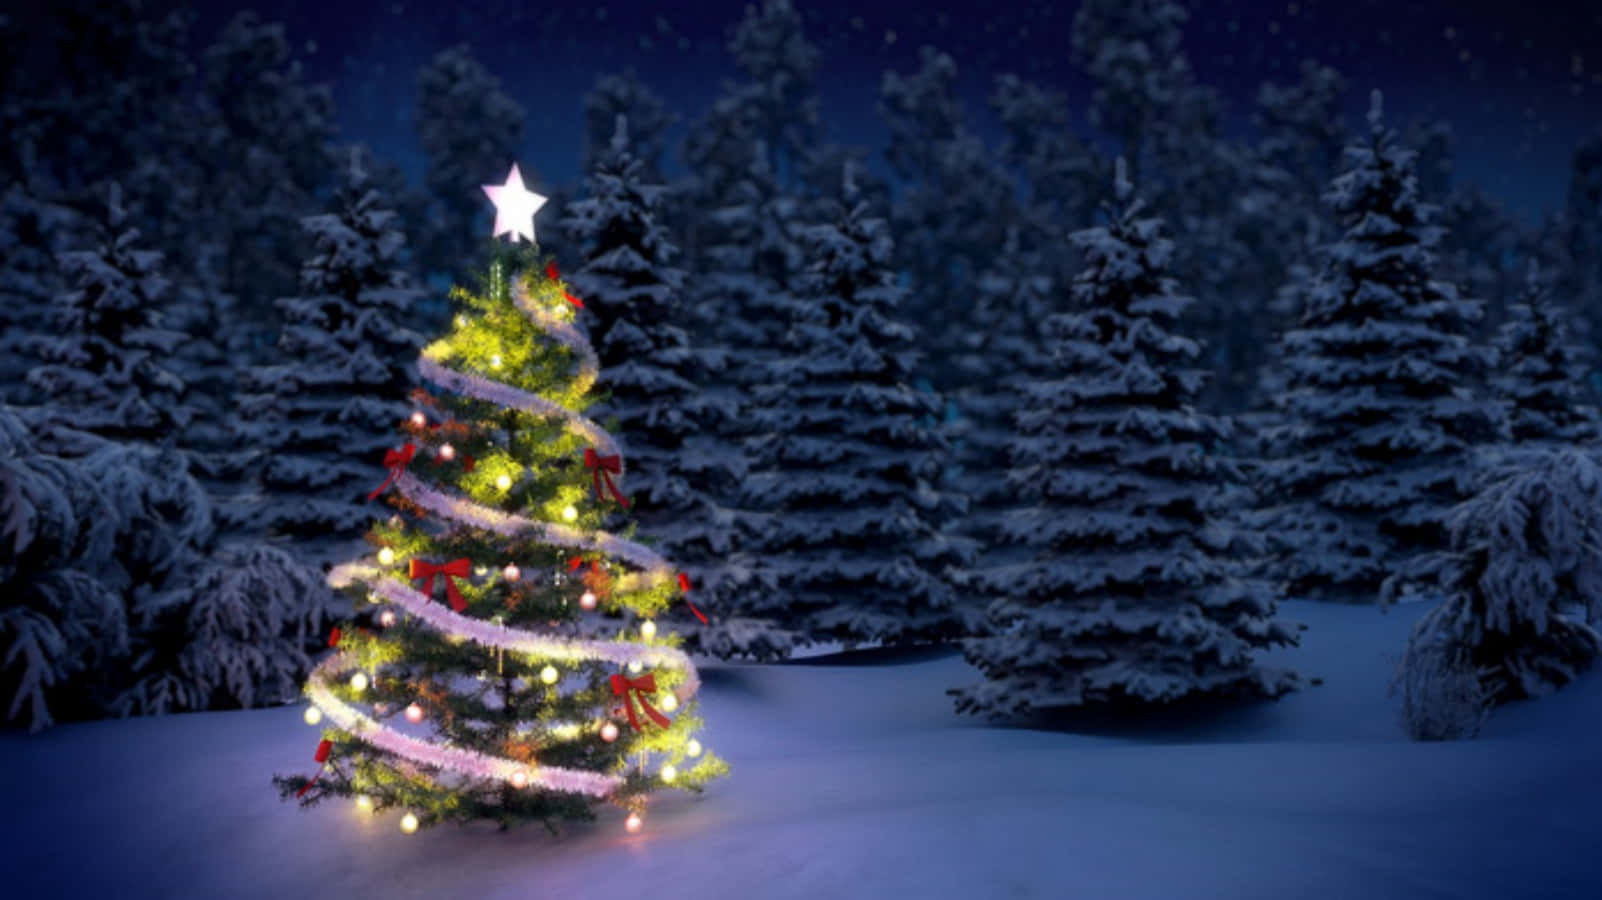 Imagende Una Granja De Árboles De Navidad Con Decoraciones.